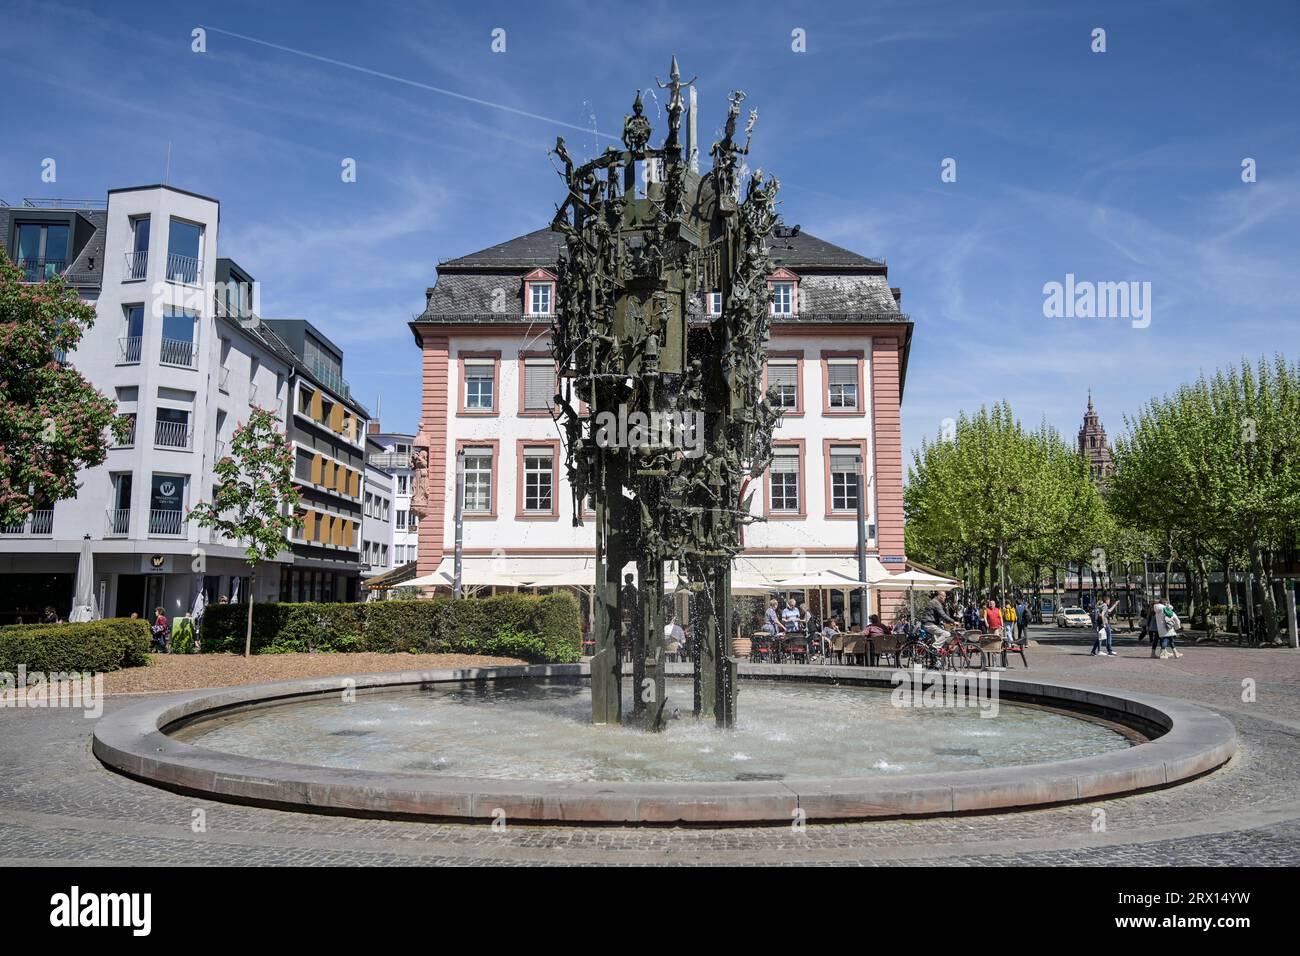 Fastnachtsbrunnen, Schillerplatz, Mainz, Rheinland-Pfalz, Deutschland Stock Photo